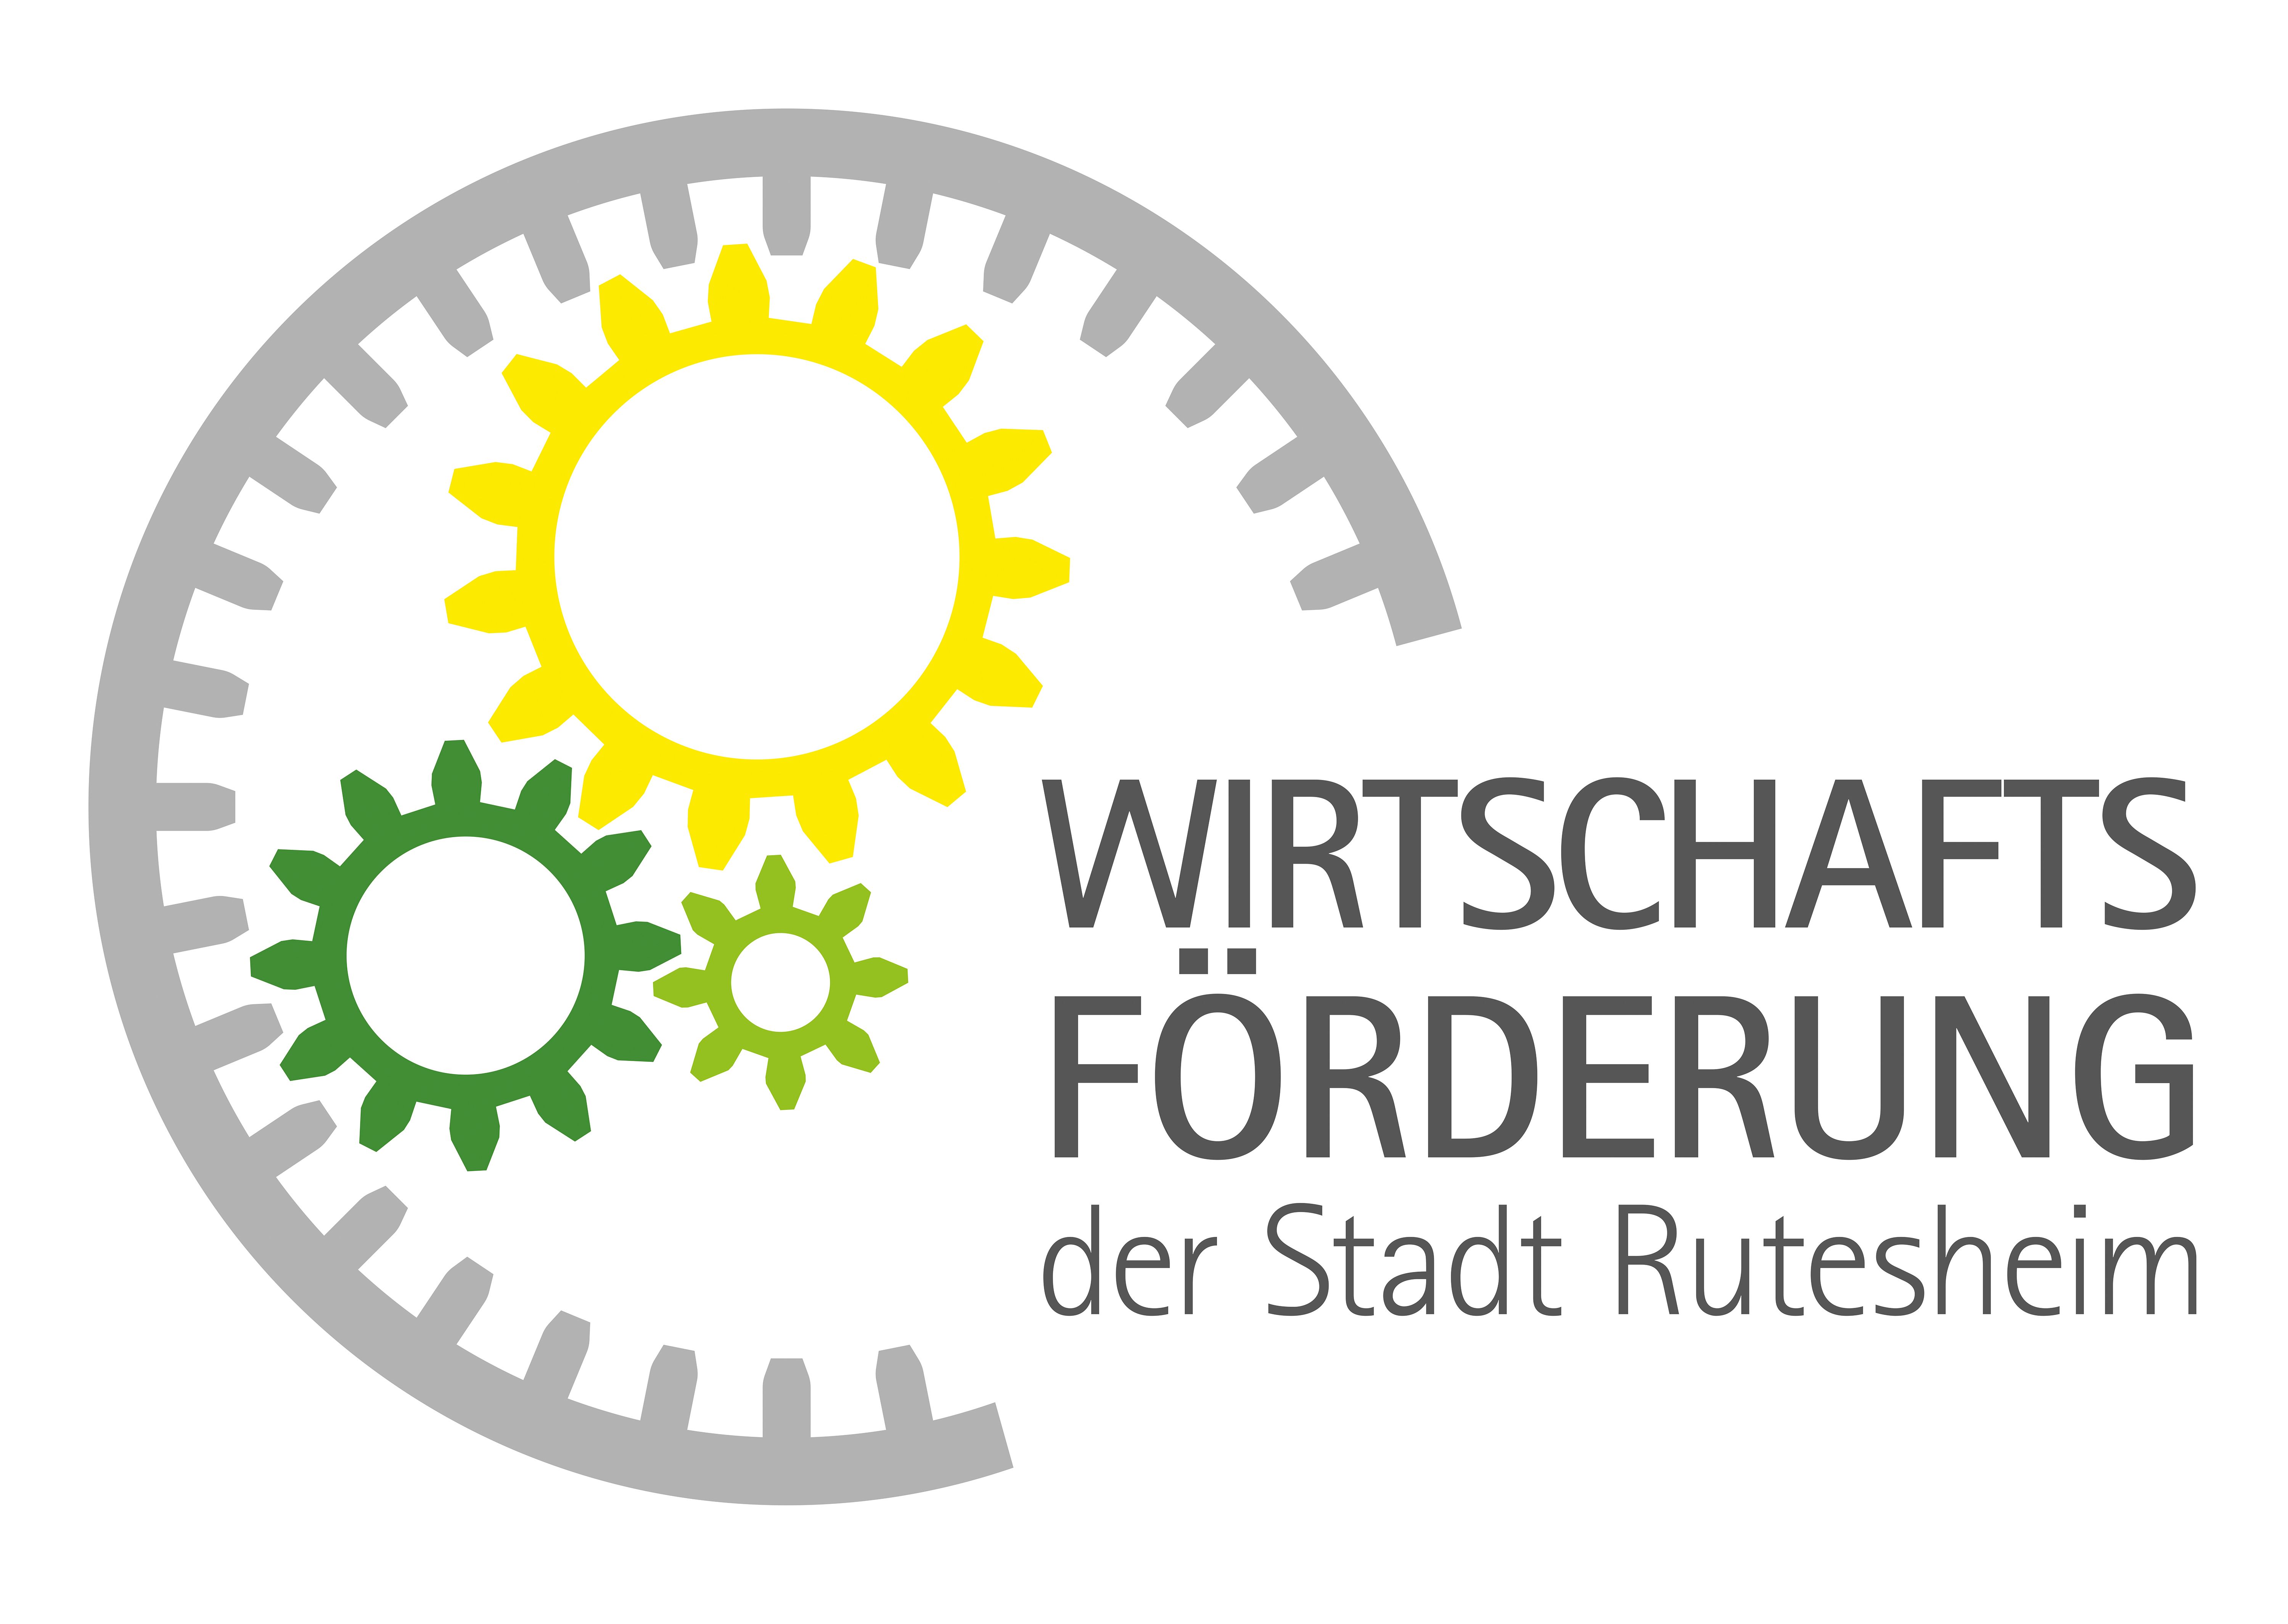 Zu sehen ist das Logo der Wirtschaftsförderung der Stadt Rutesheim